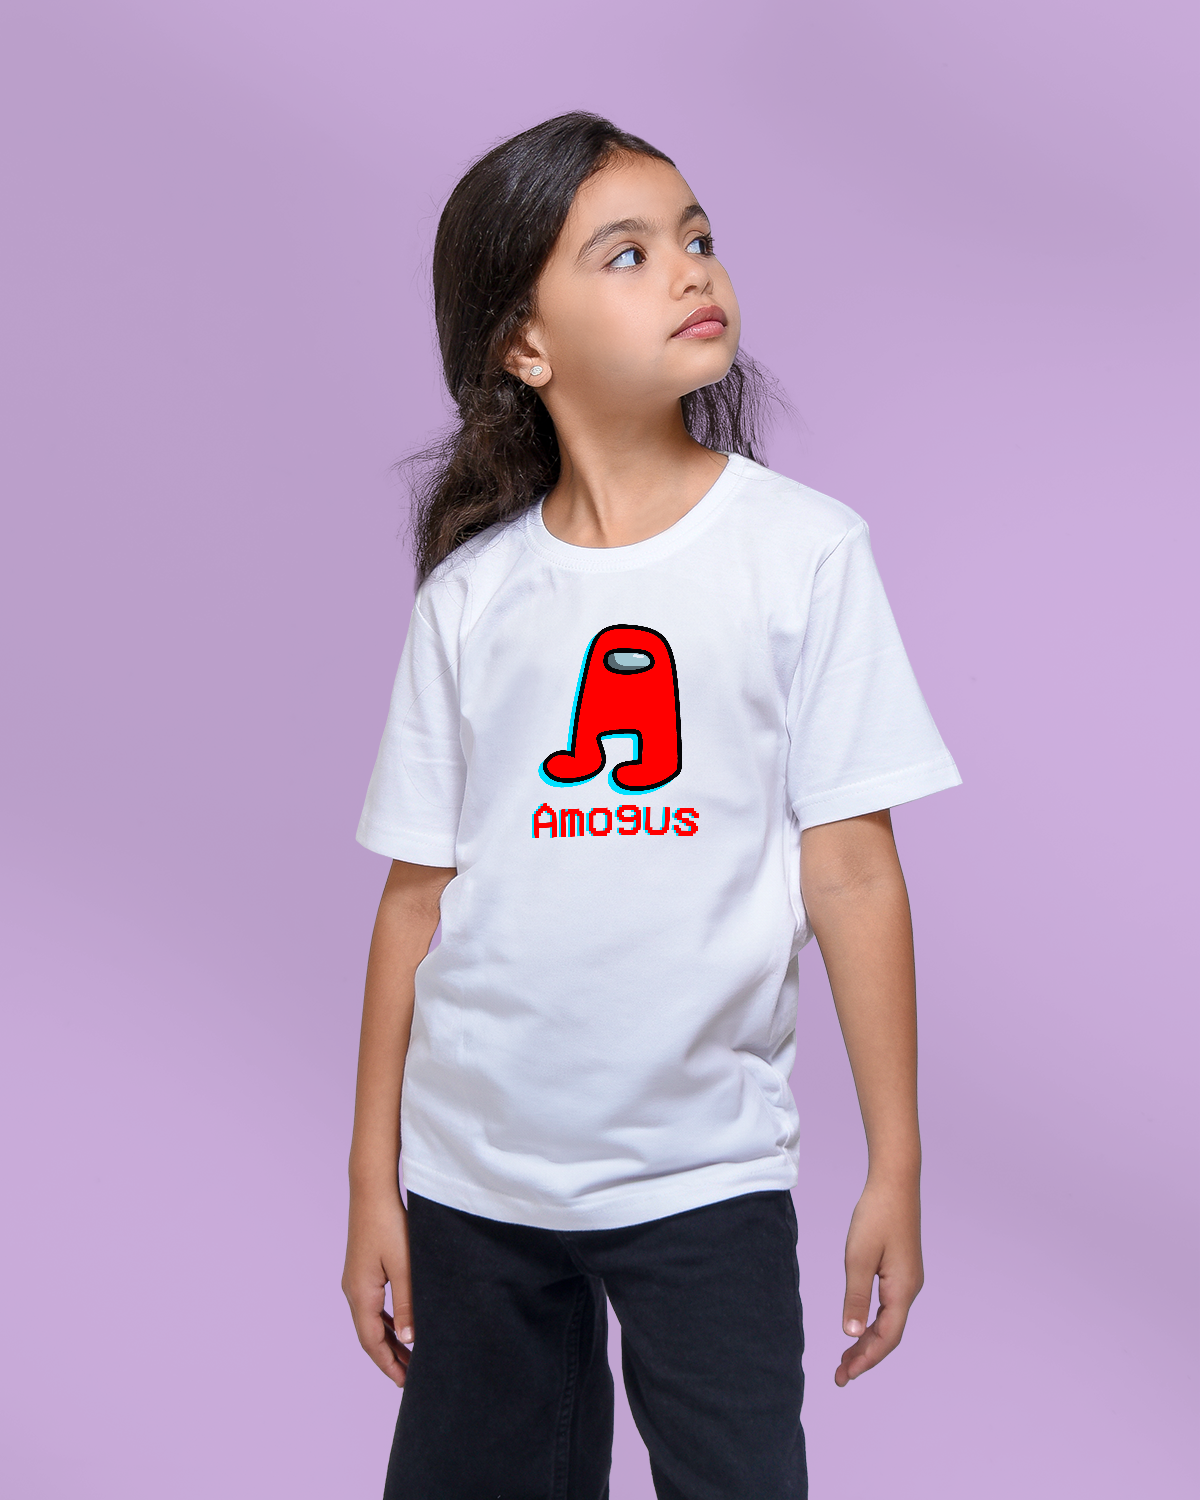 Girls' T-shirt (Amogous)